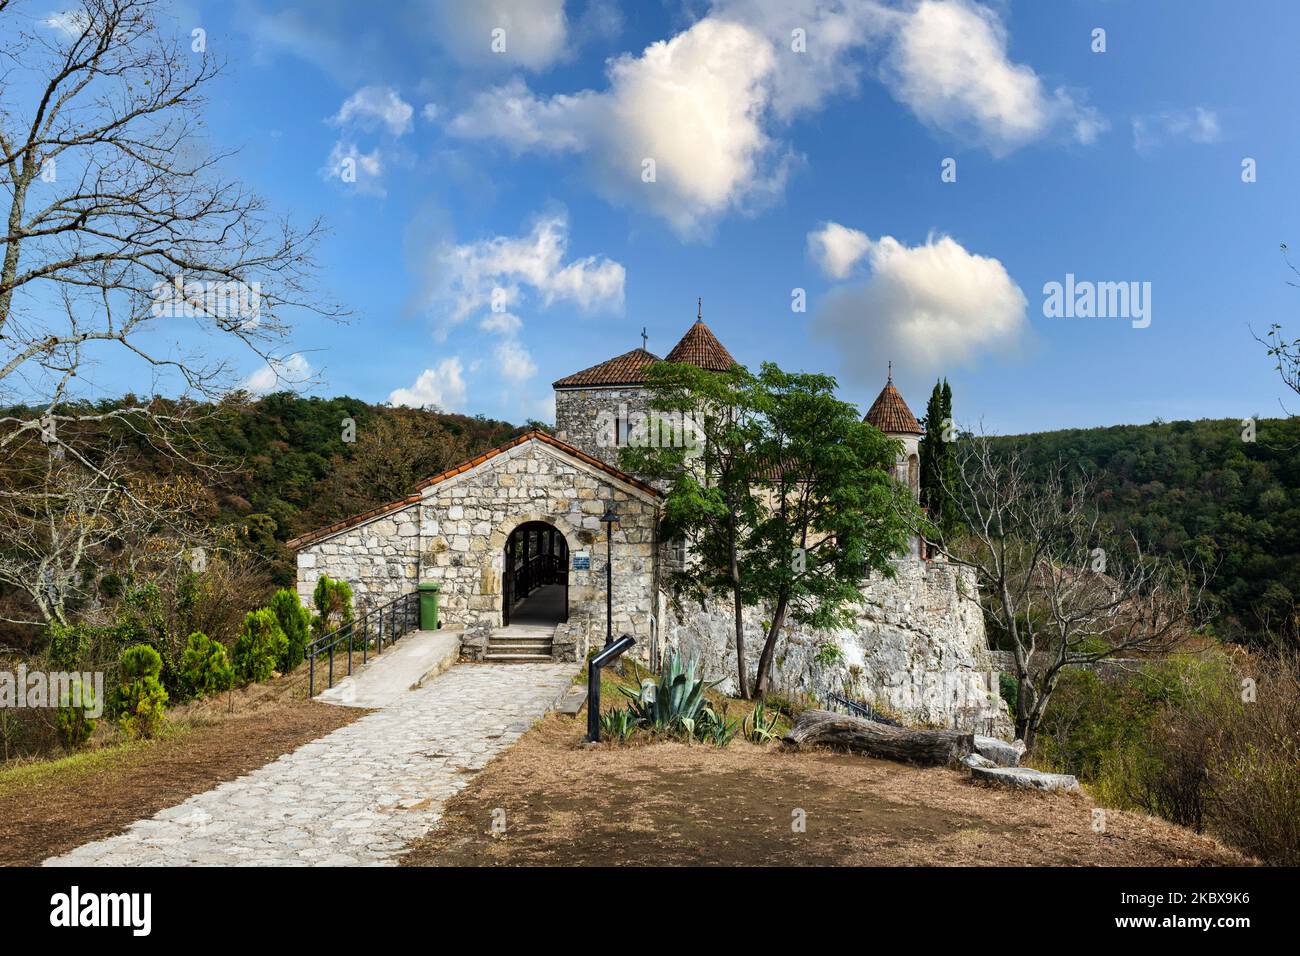 Monastère de Motsameta, église orthodoxe médiévale en pierre située sur une falaise près de Kutaisi, Géorgie, région d'Imereti. Banque D'Images